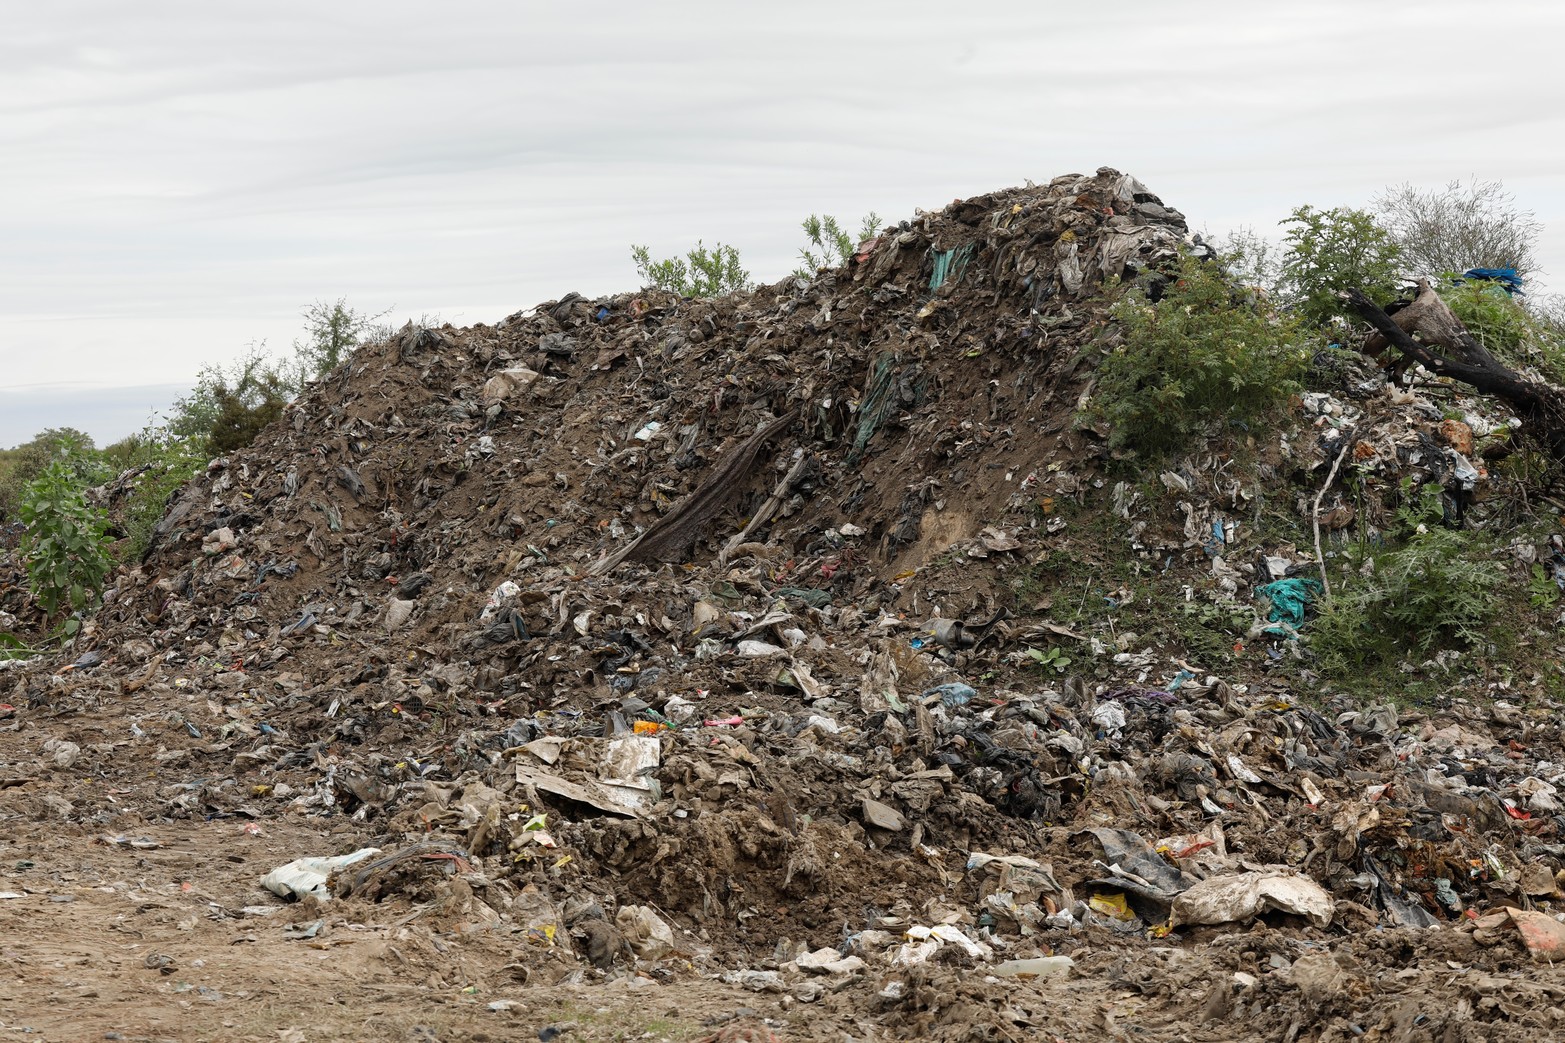 Comenzaron a limpiar el basural de Rincón, pero vecinos advierten que están enterrando los residuos